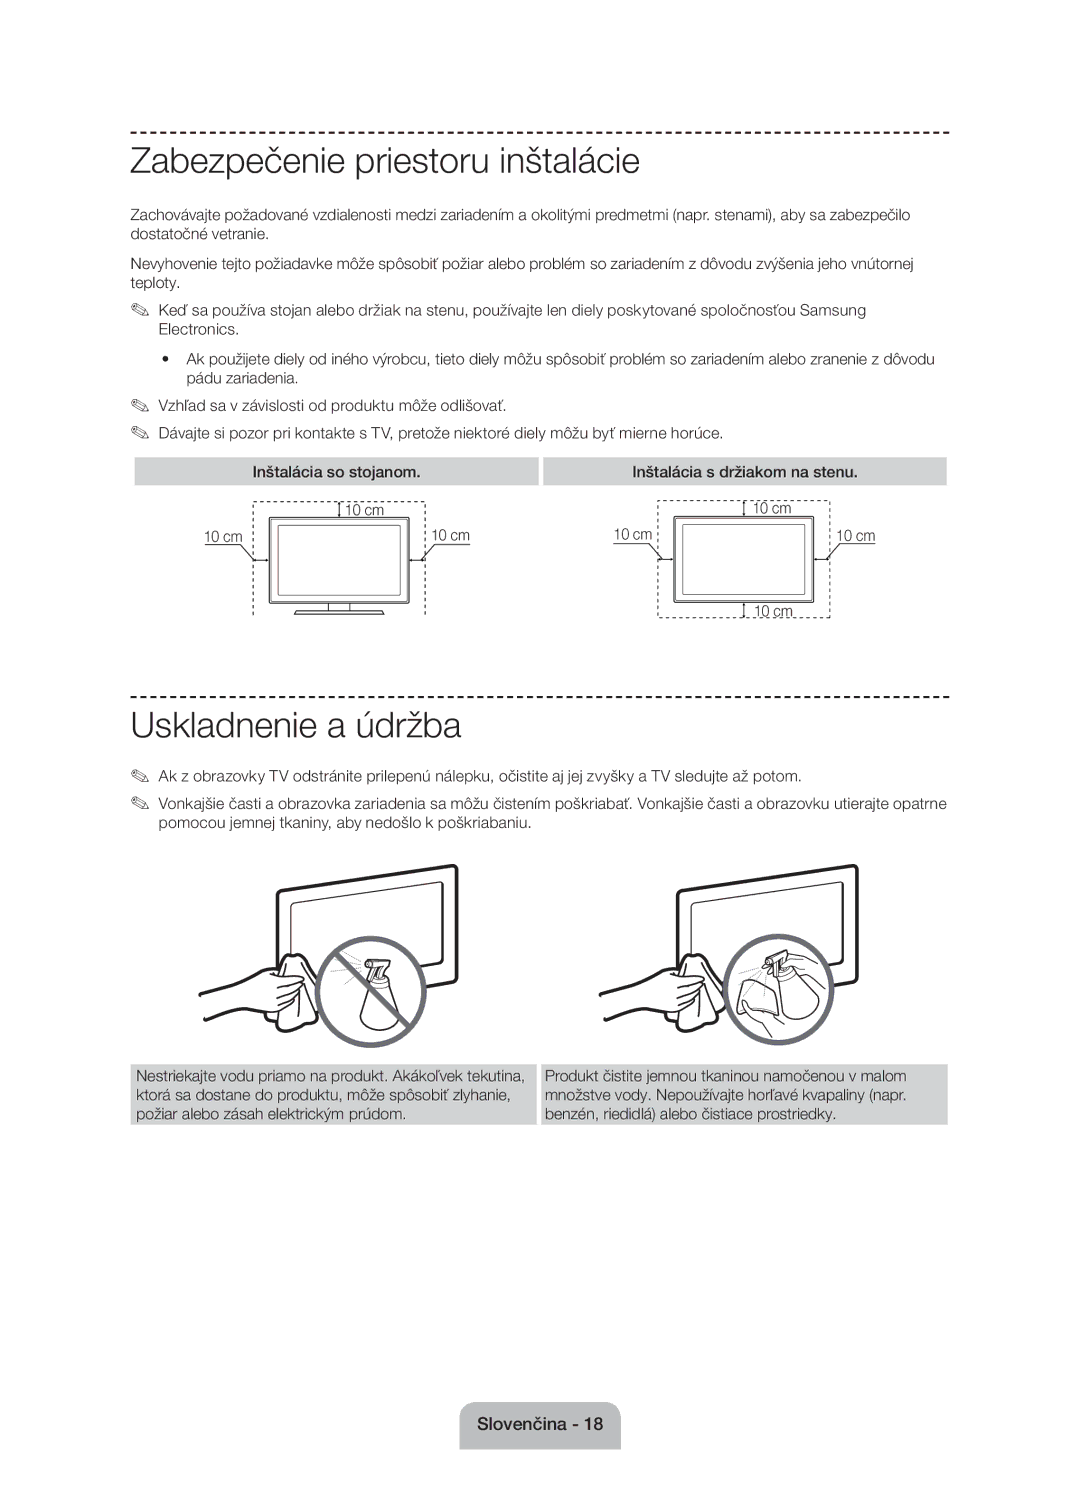 Samsung UE60J6100AWXBT manual Zabezpečenie priestoru inštalácie, Uskladnenie a údržba, Inštalácia s držiakom na stenu 